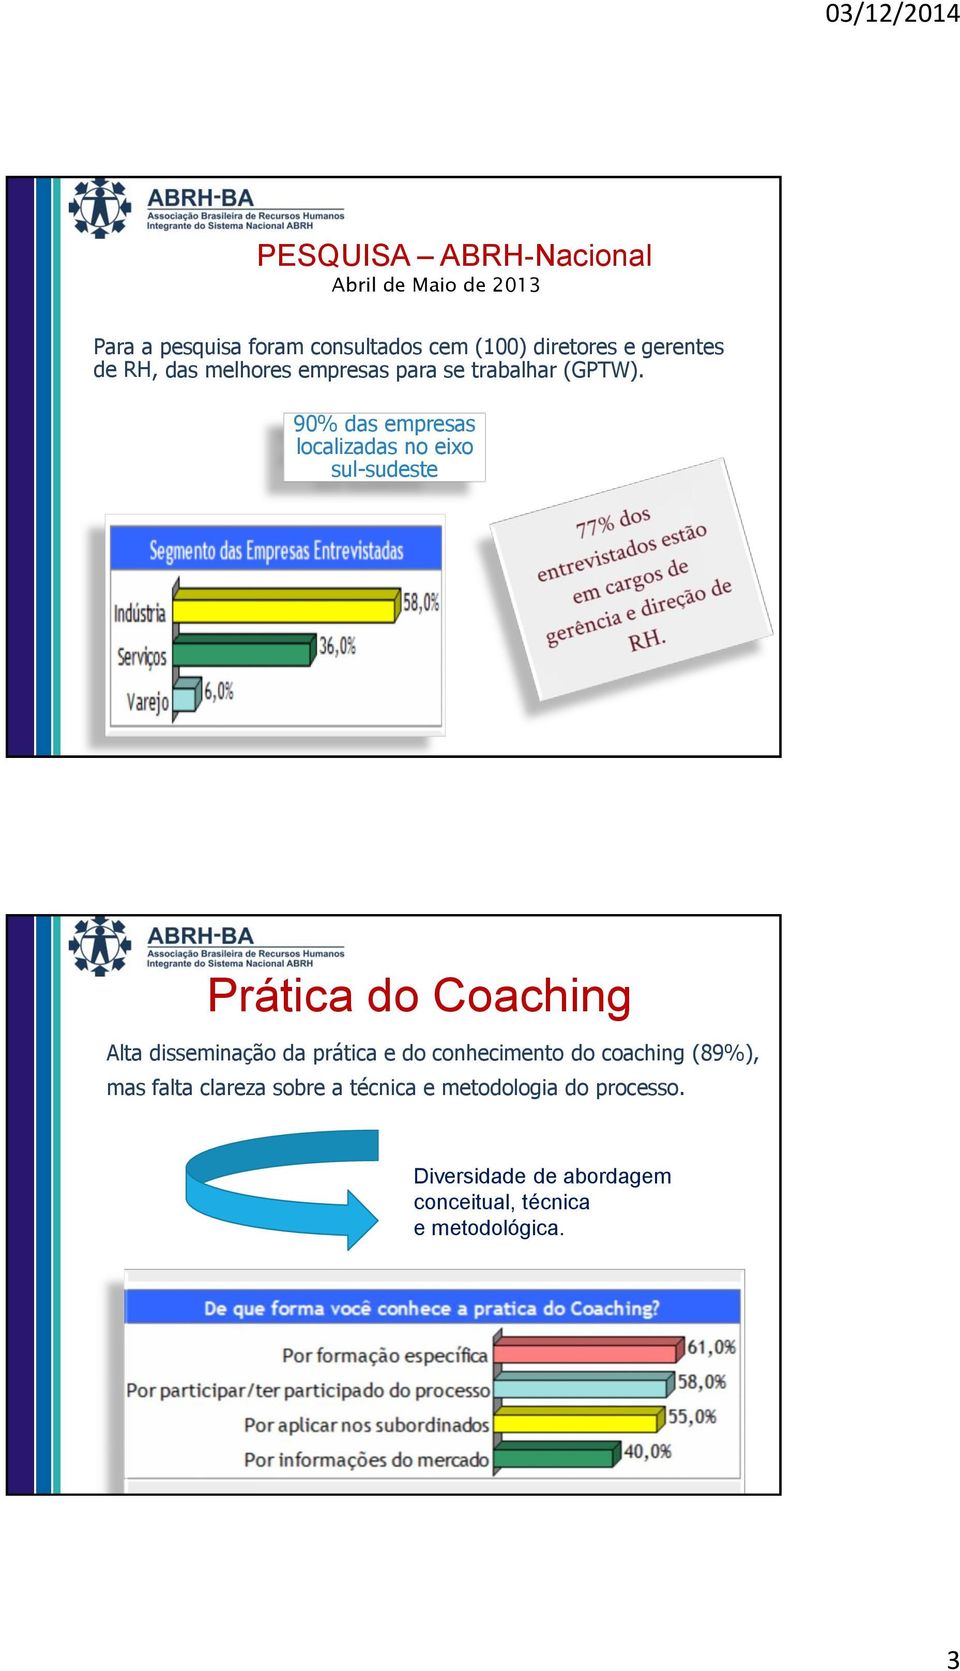 A importância, a metodologia e a avaliação da prática do coaching são vistas de forma diferentes tanto nos estados como nos diversos para desenvolver atributos de